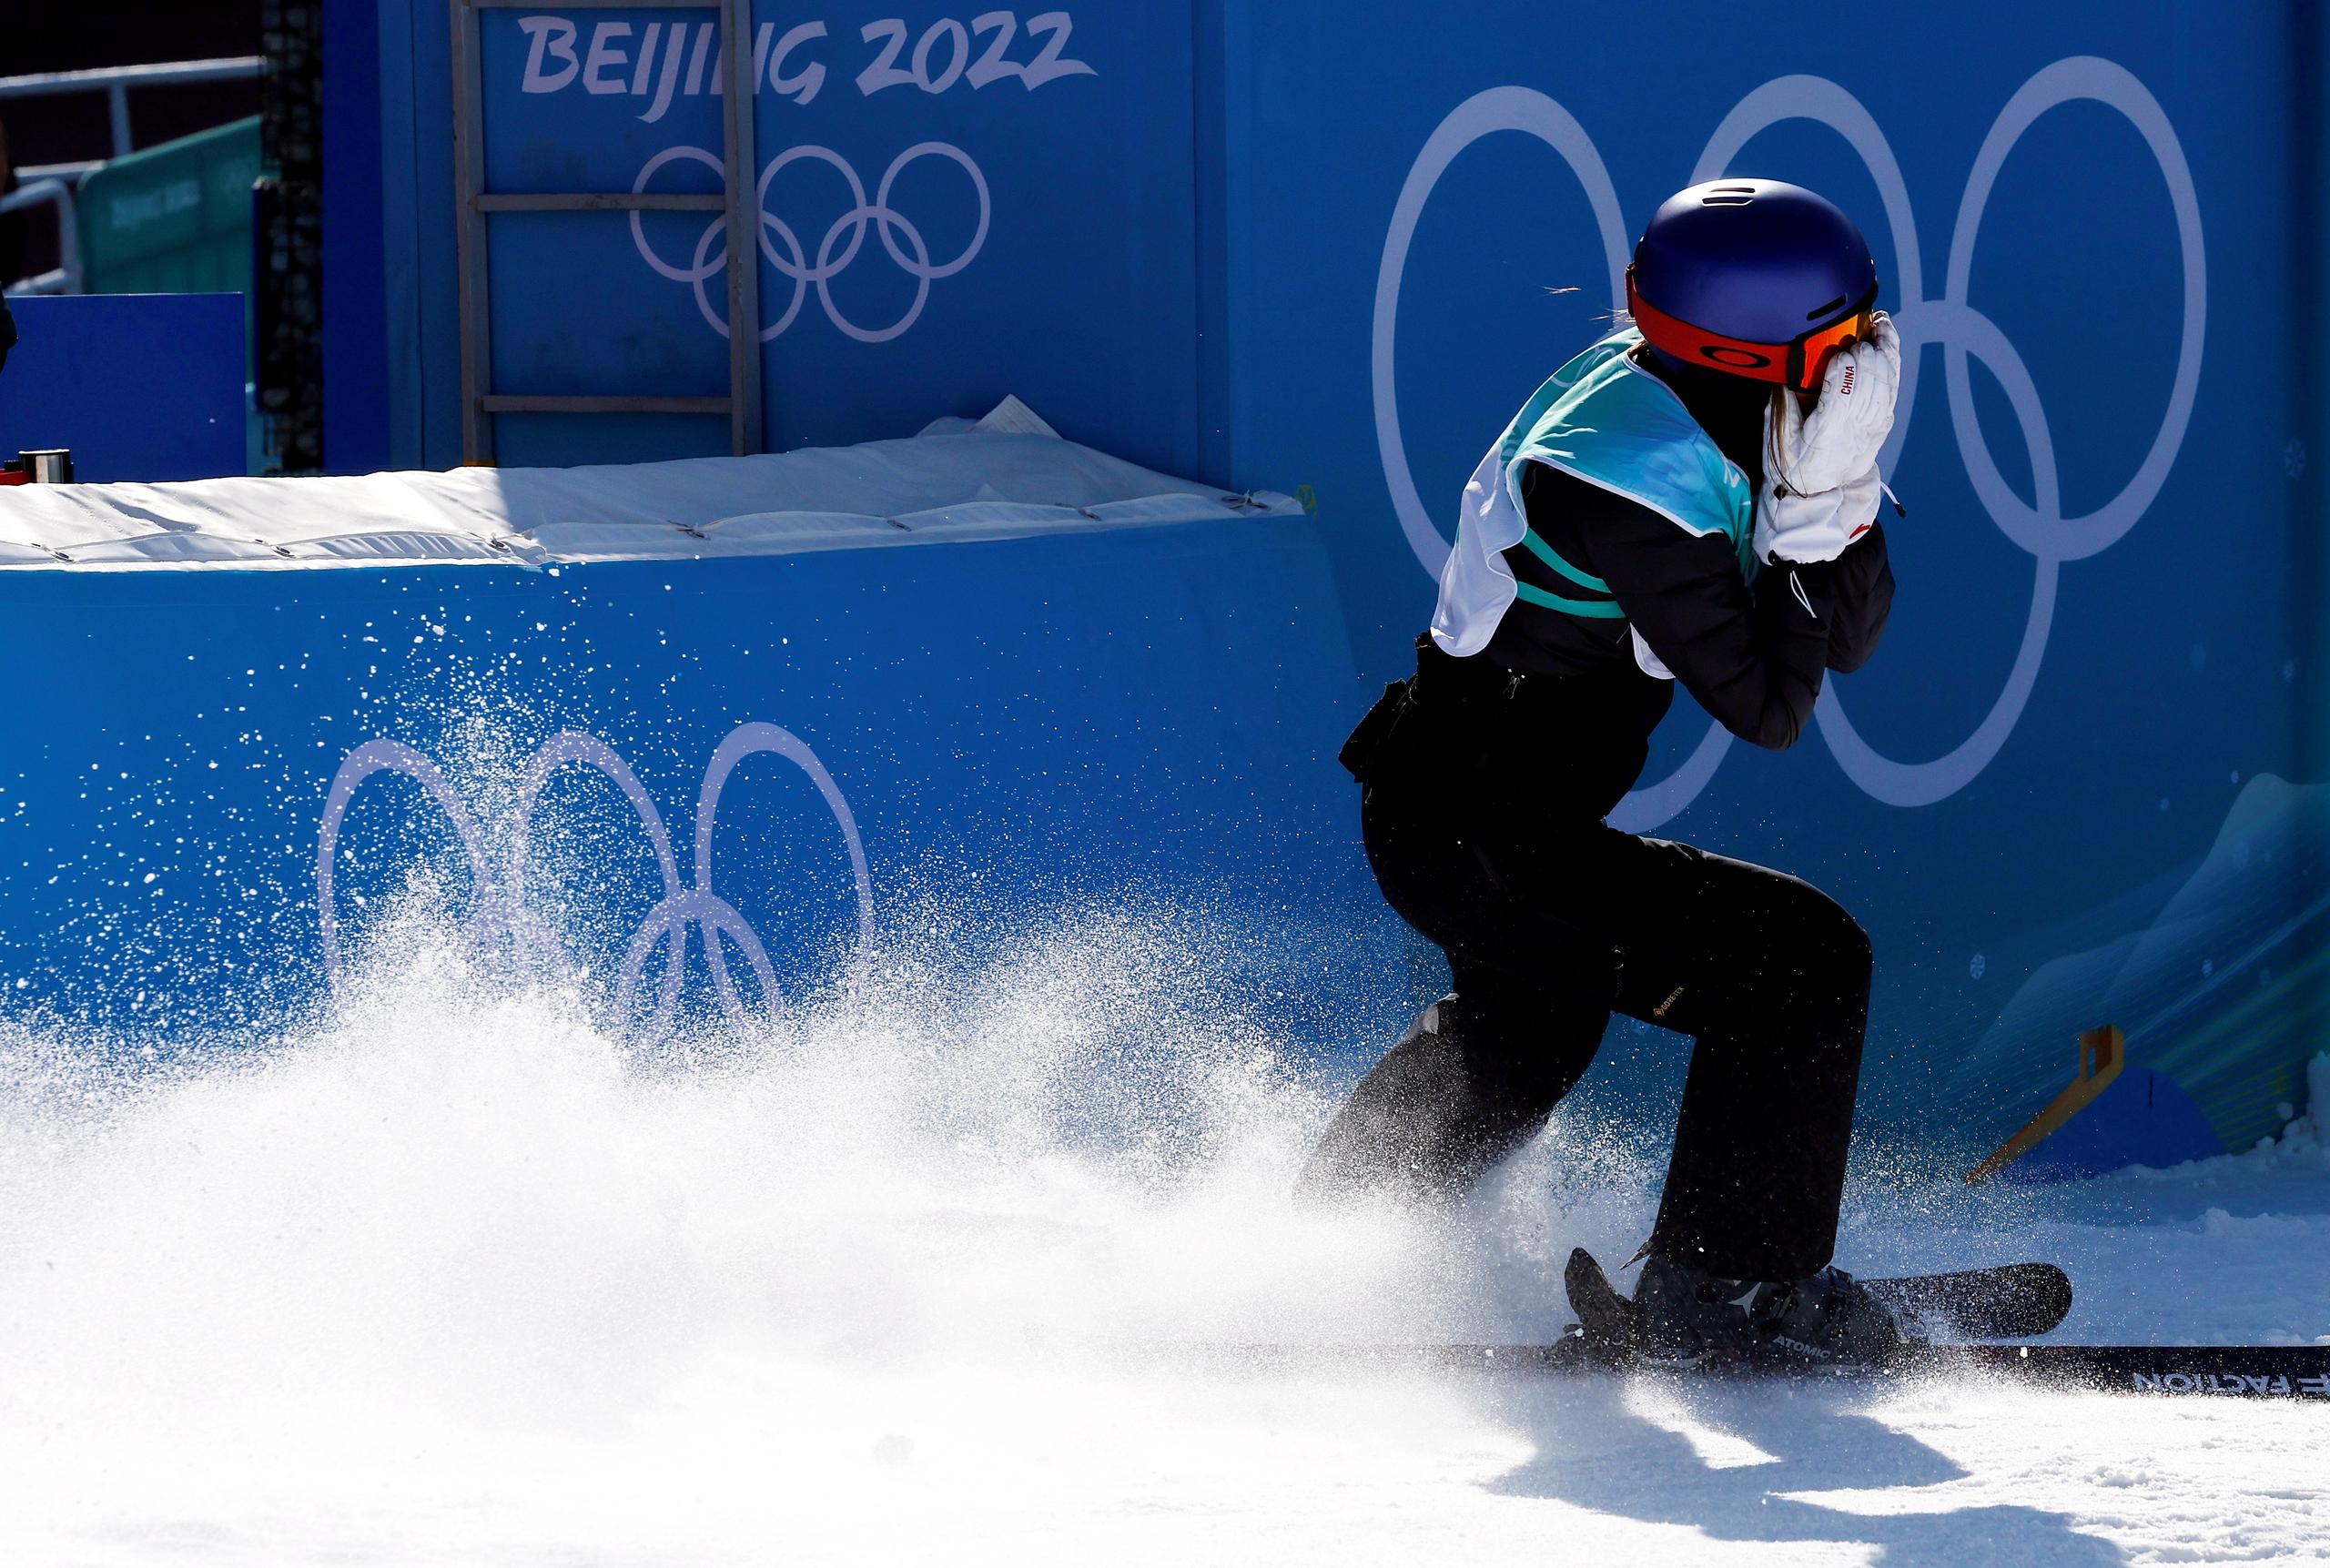 Eileen Gu, en el momento en que completó el salto que le valió su primera medalla de oro en los Juegos Olímpicos Invernales Pekín 2022.